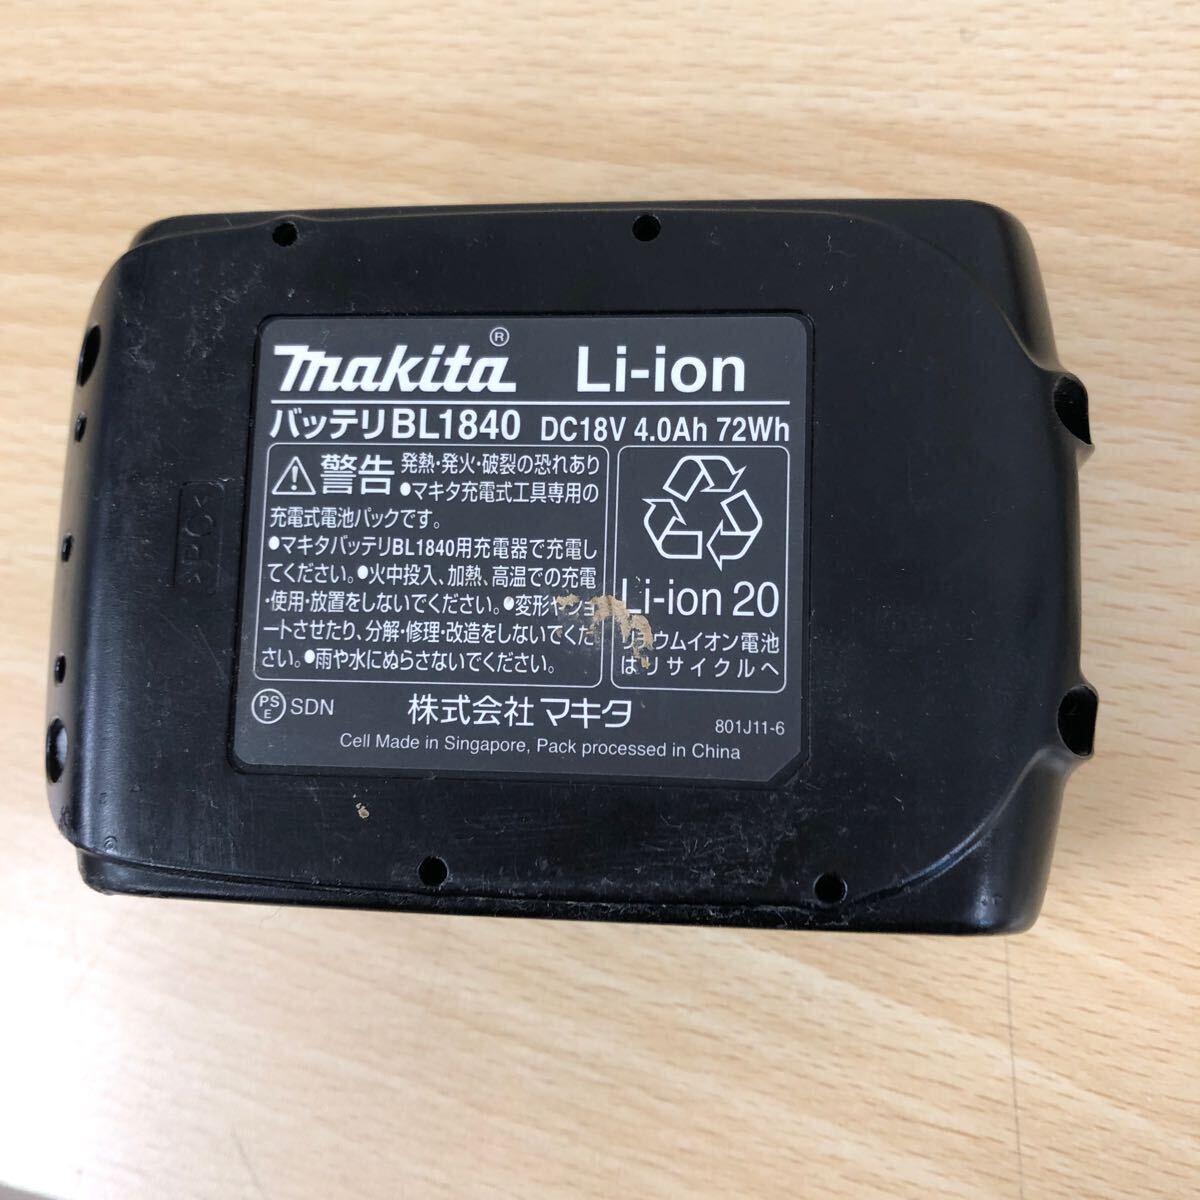  б/у товар Makita makita заряжающийся очиститель 18V 4.0Ah CL180FD аккумулятор имеется корпус только пылеуловитель * электроинструмент 